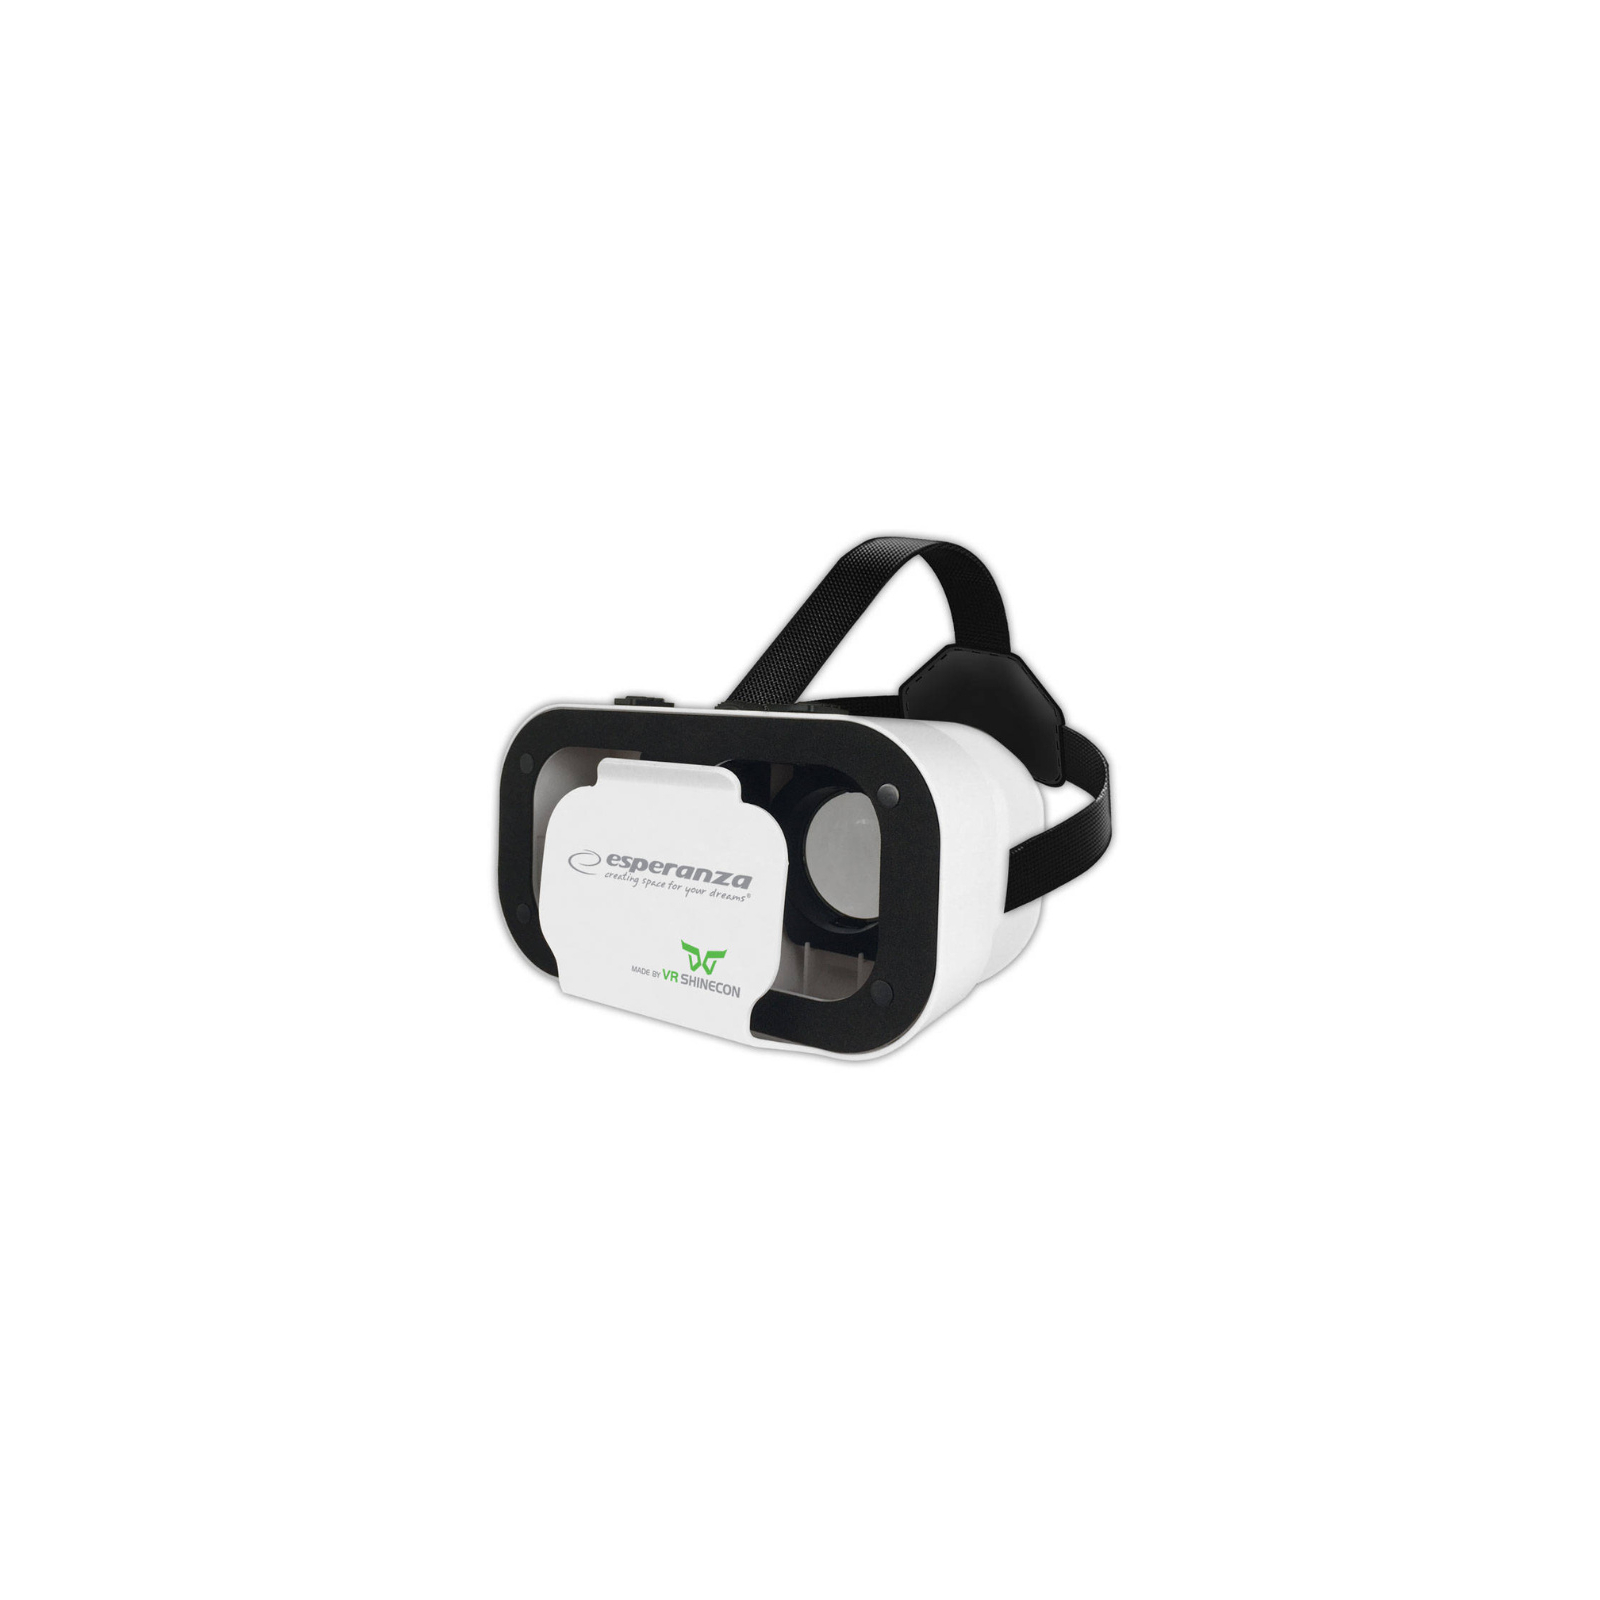 Очки виртуальной реальности Esperanza 3D VR Glasses SHINECON 4.7" - 6" (EMV400)